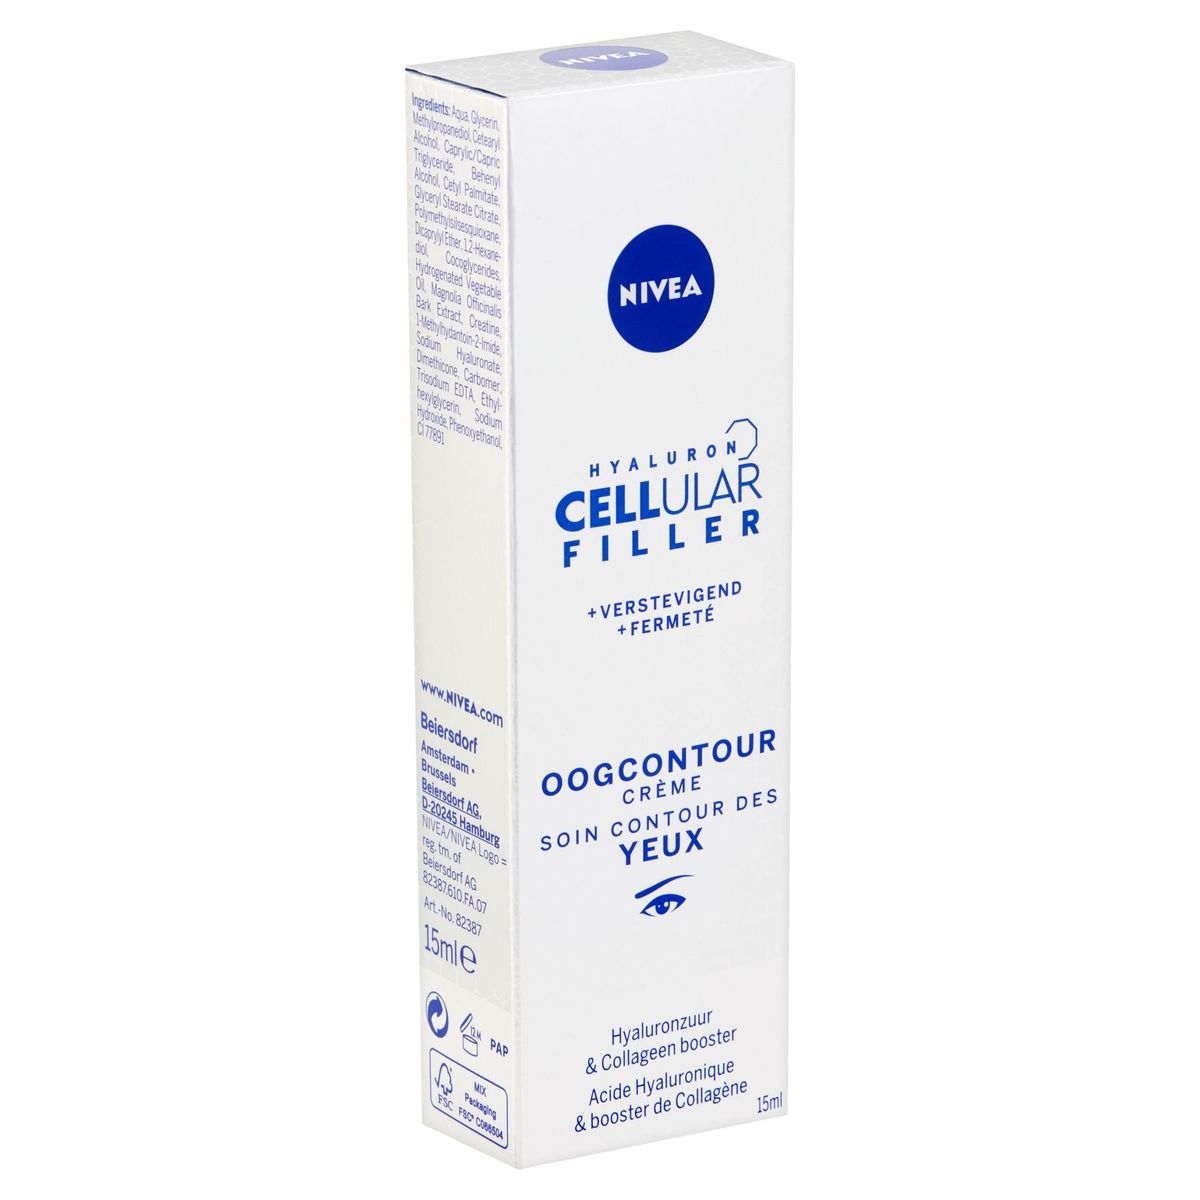 Nivea Hyaluron Cellular Filler + Verstevigend Oogcontour Crème 15 ml